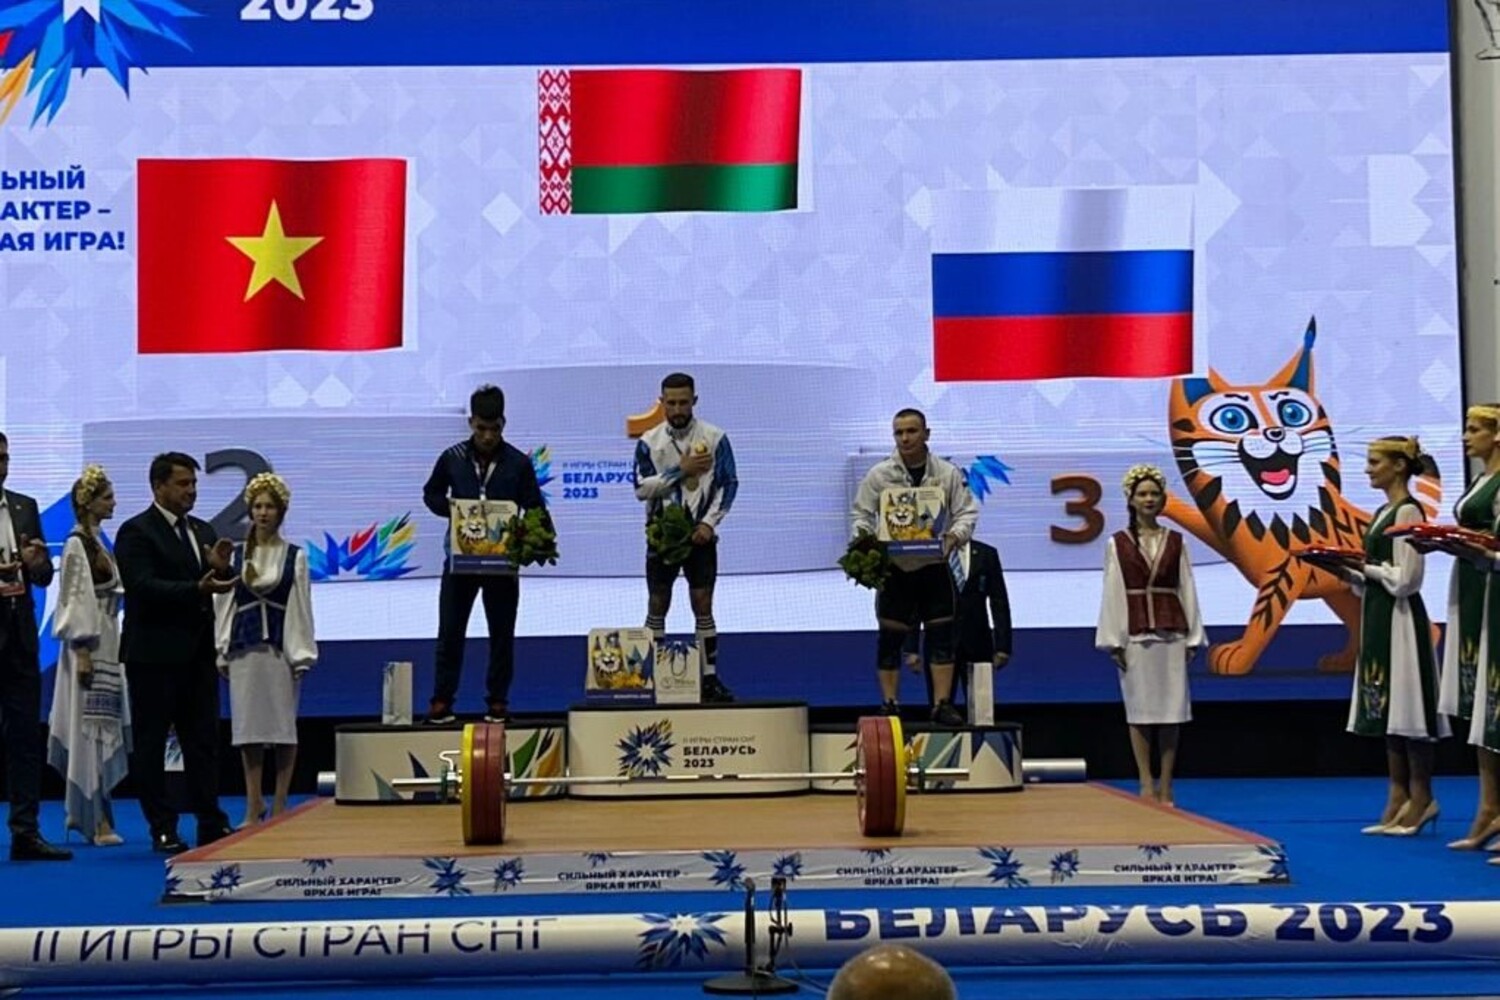 Выступающий при поддержке Стройсервиса тяжелоатлет стал призером международных соревнований в Белоруссии. Стройсервис